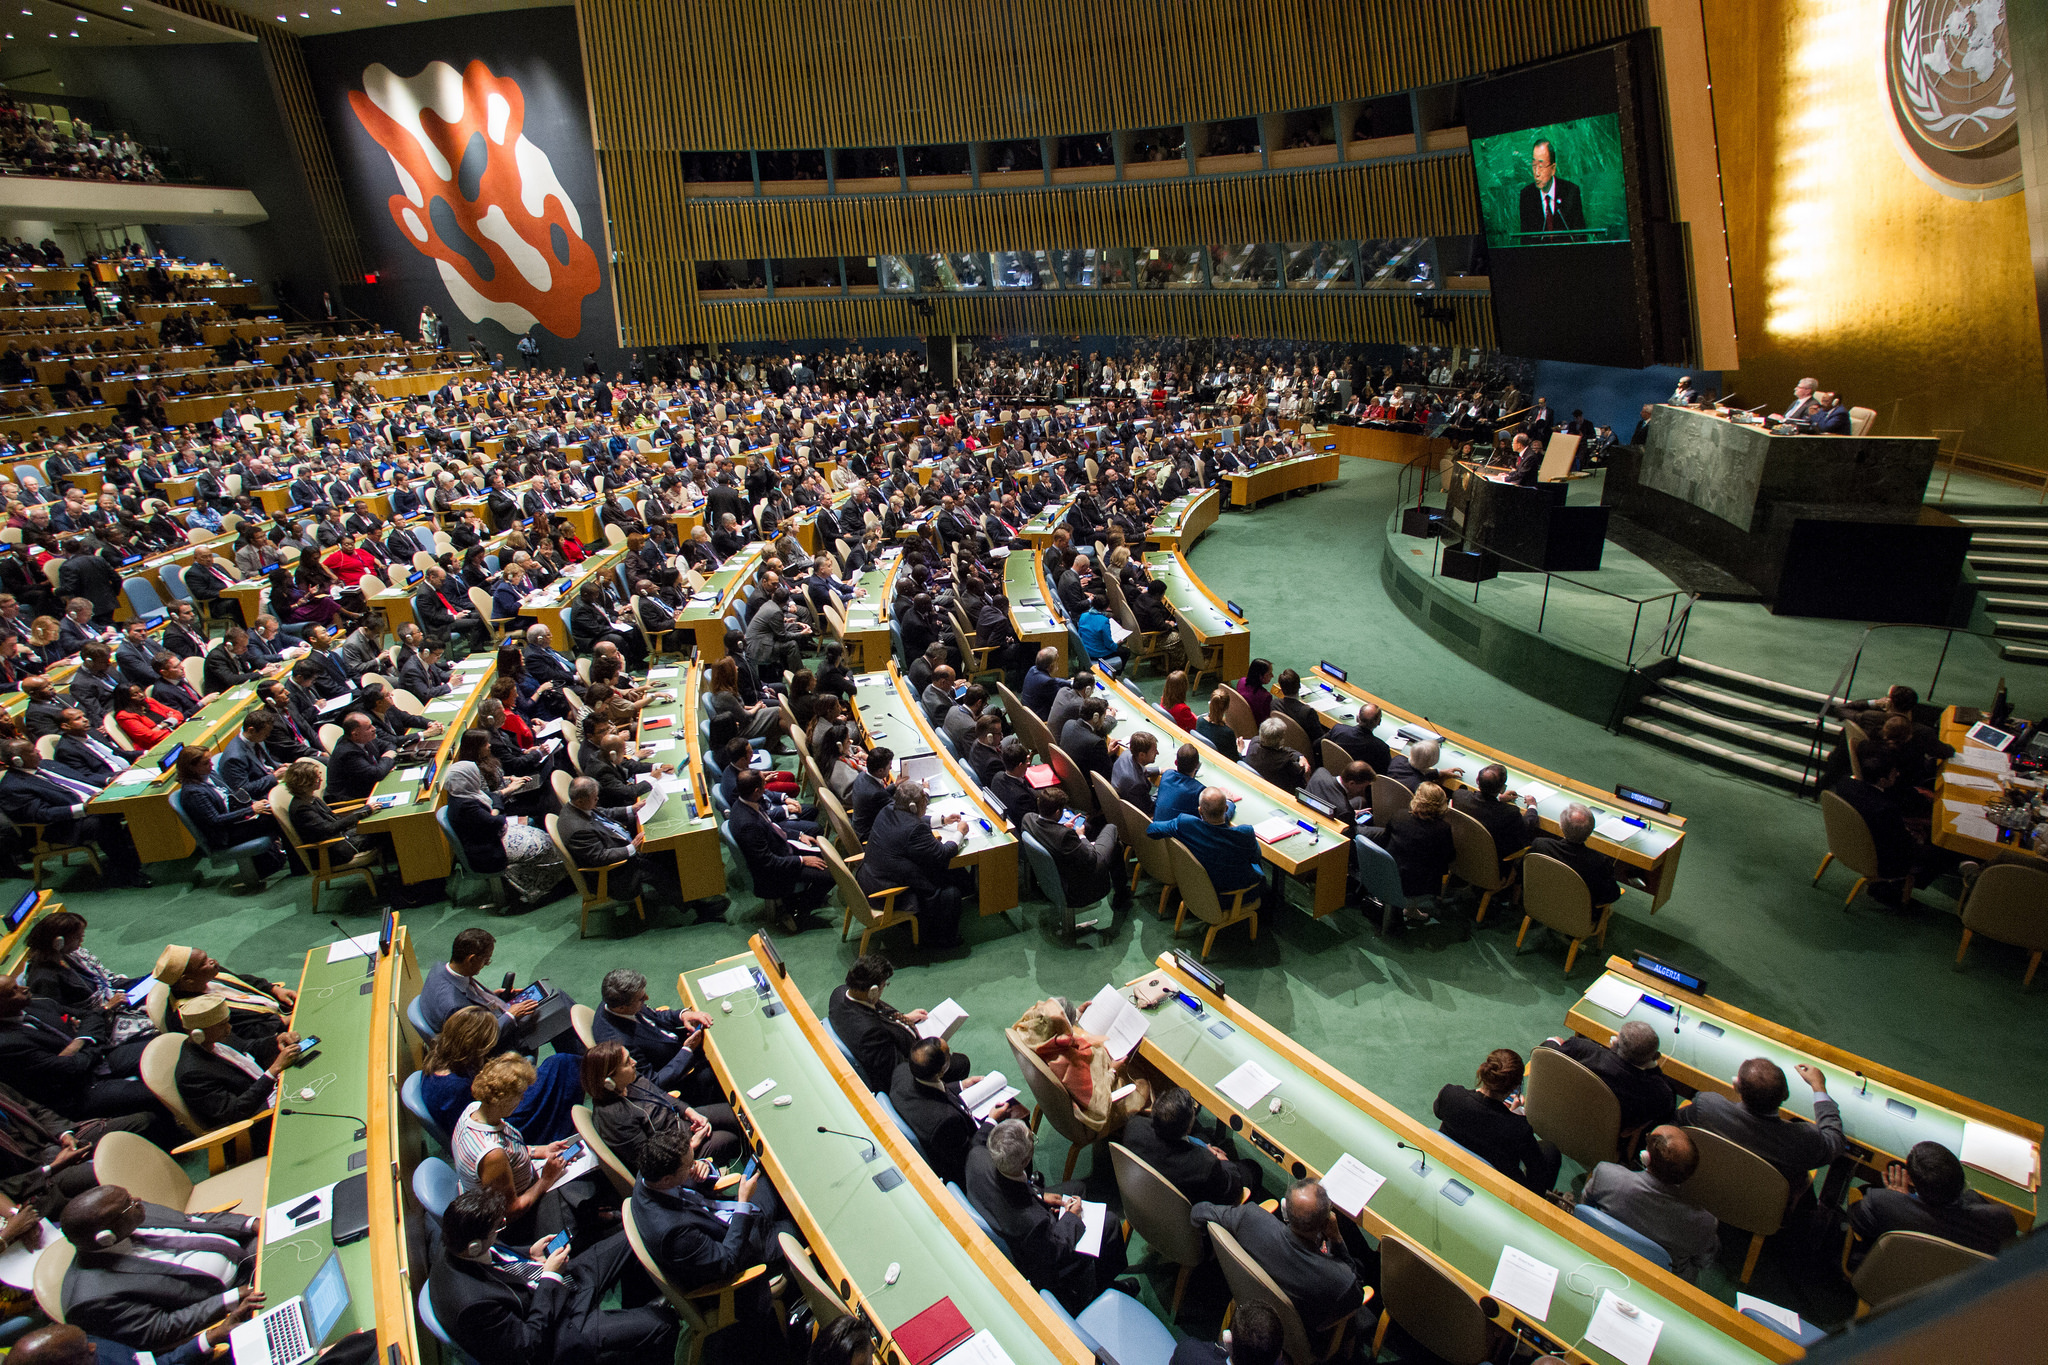 3314 оон. Третий комитет Генеральной Ассамблеи ООН. Зал Генеральной Ассамблеи ООН. Генеральная Ассамблея ООН 2005. Генеральная Ассамблея ООН (га ООН) трибуна.